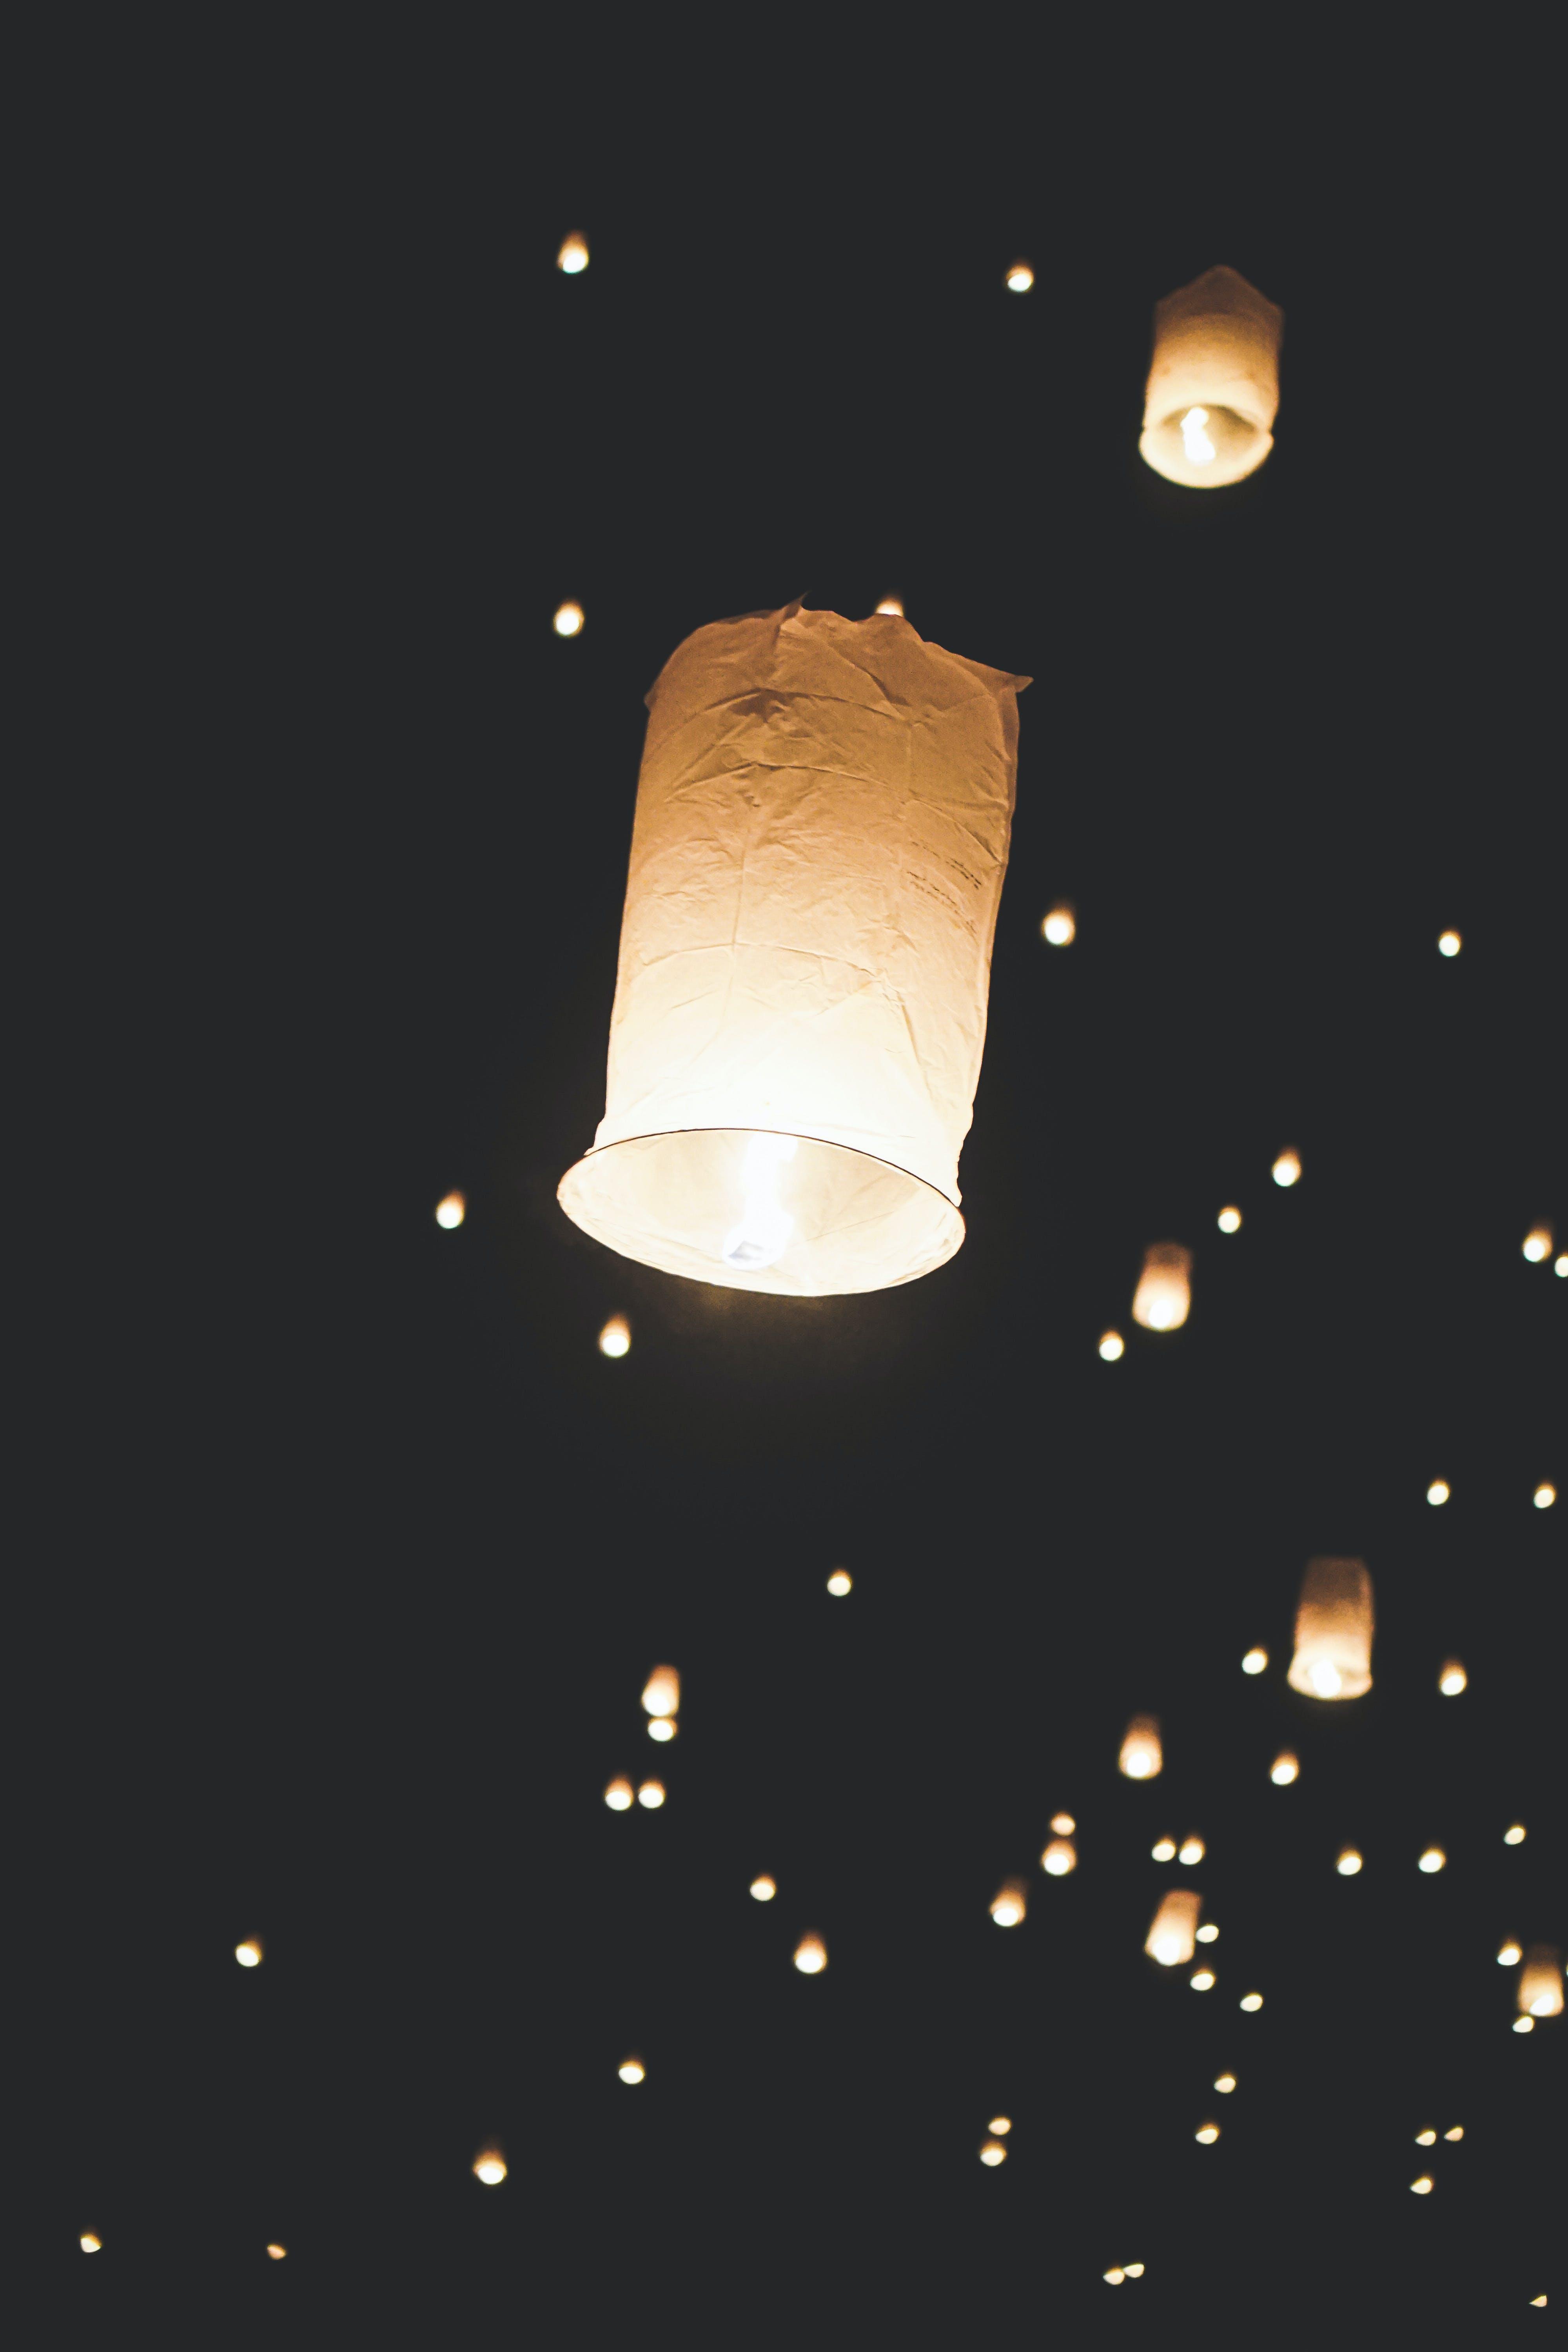 Are paper lanterns dangerous? 